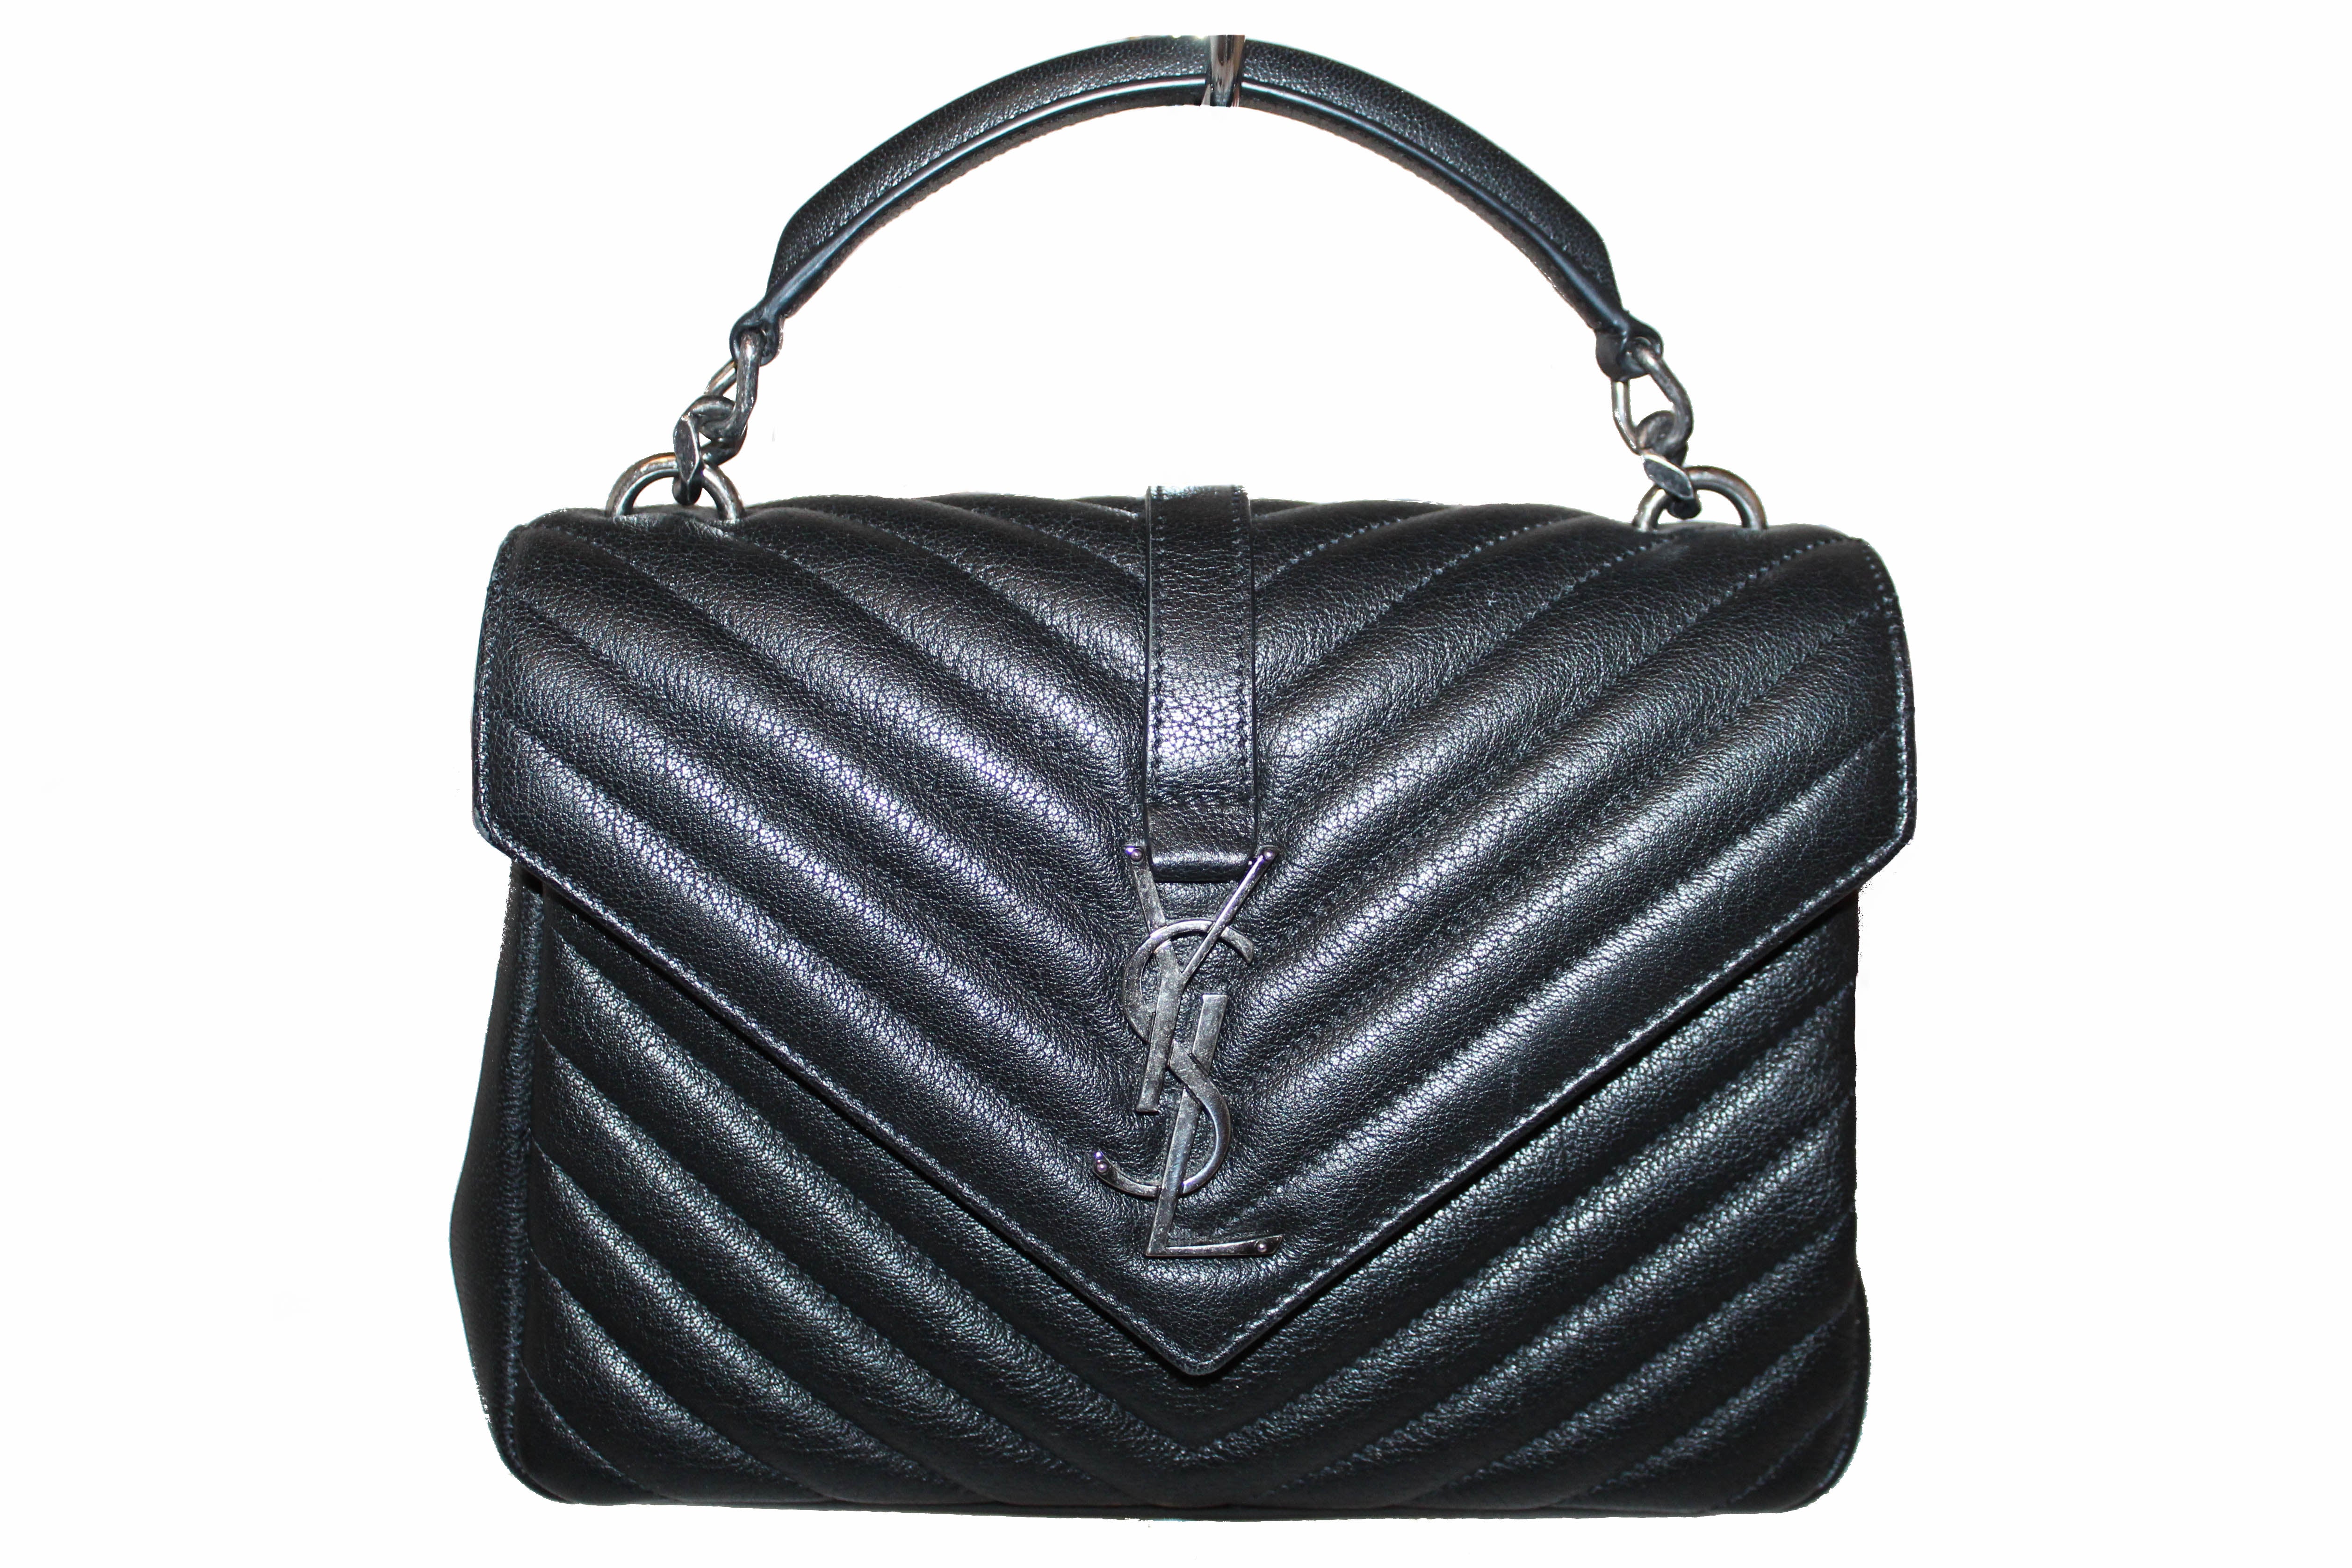 Authentic Yves Saint Laurent YSL Black Matelasse Leather Medium Collag ...